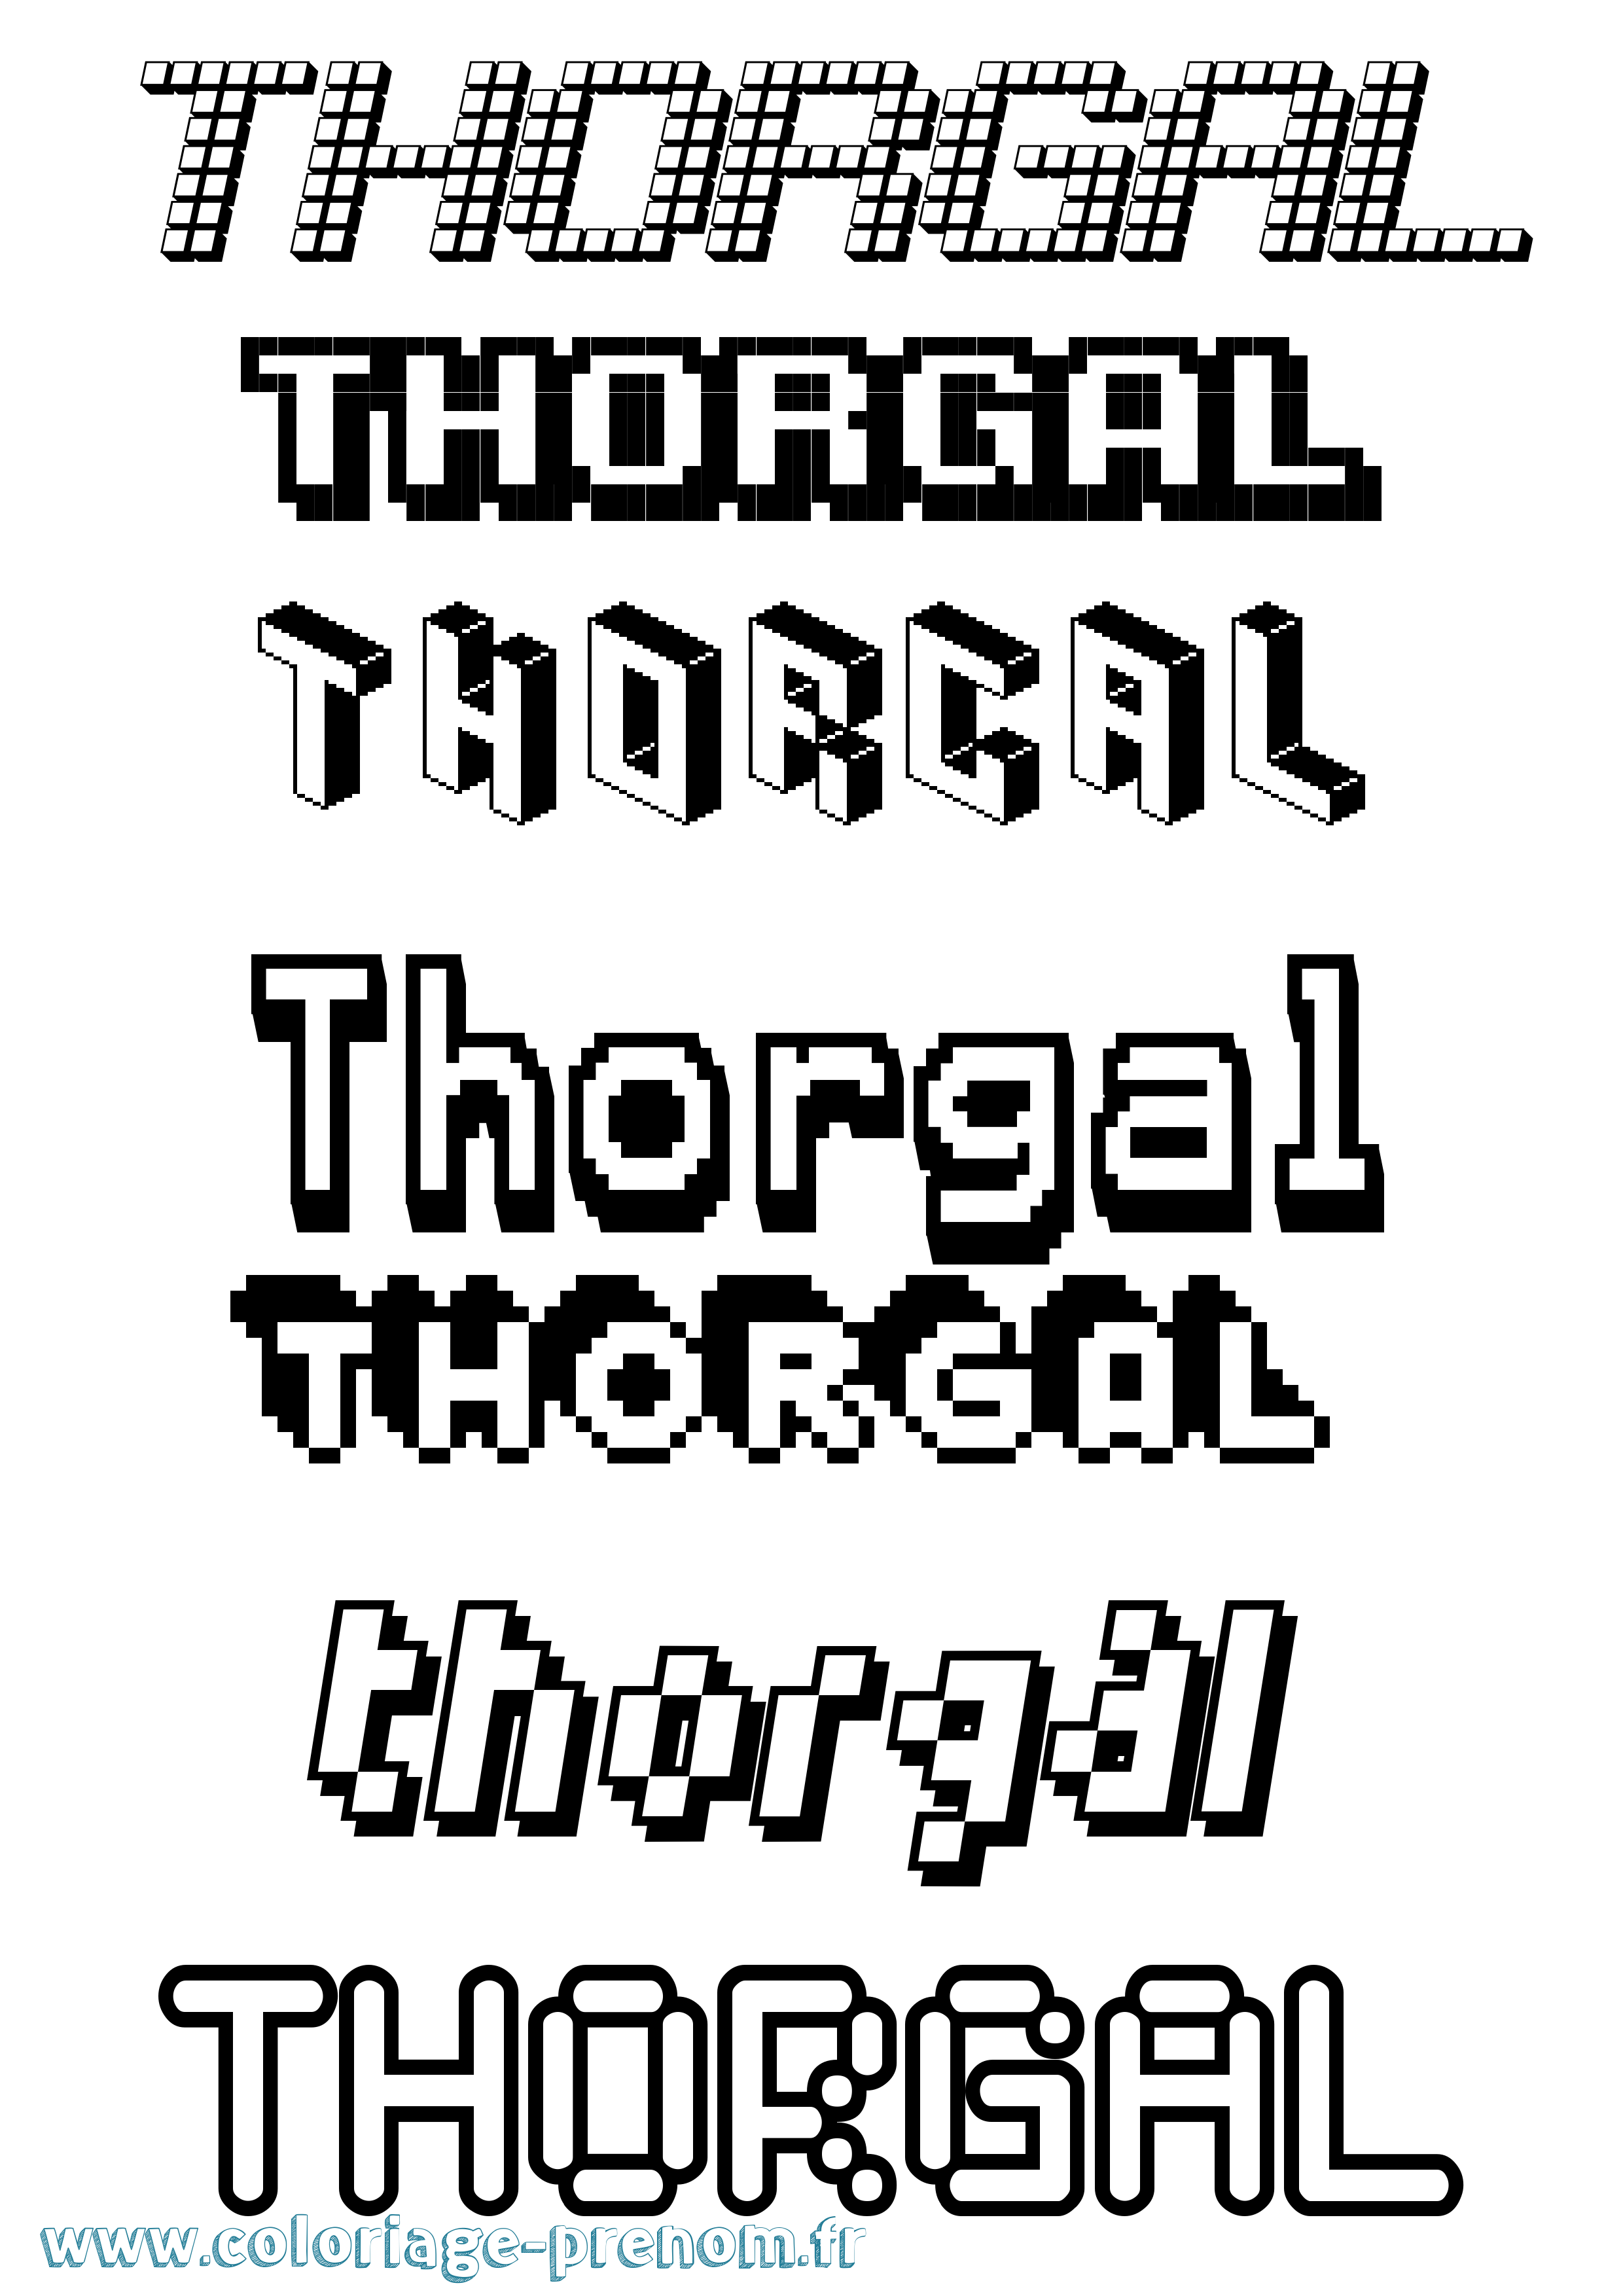 Coloriage prénom Thorgal Pixel